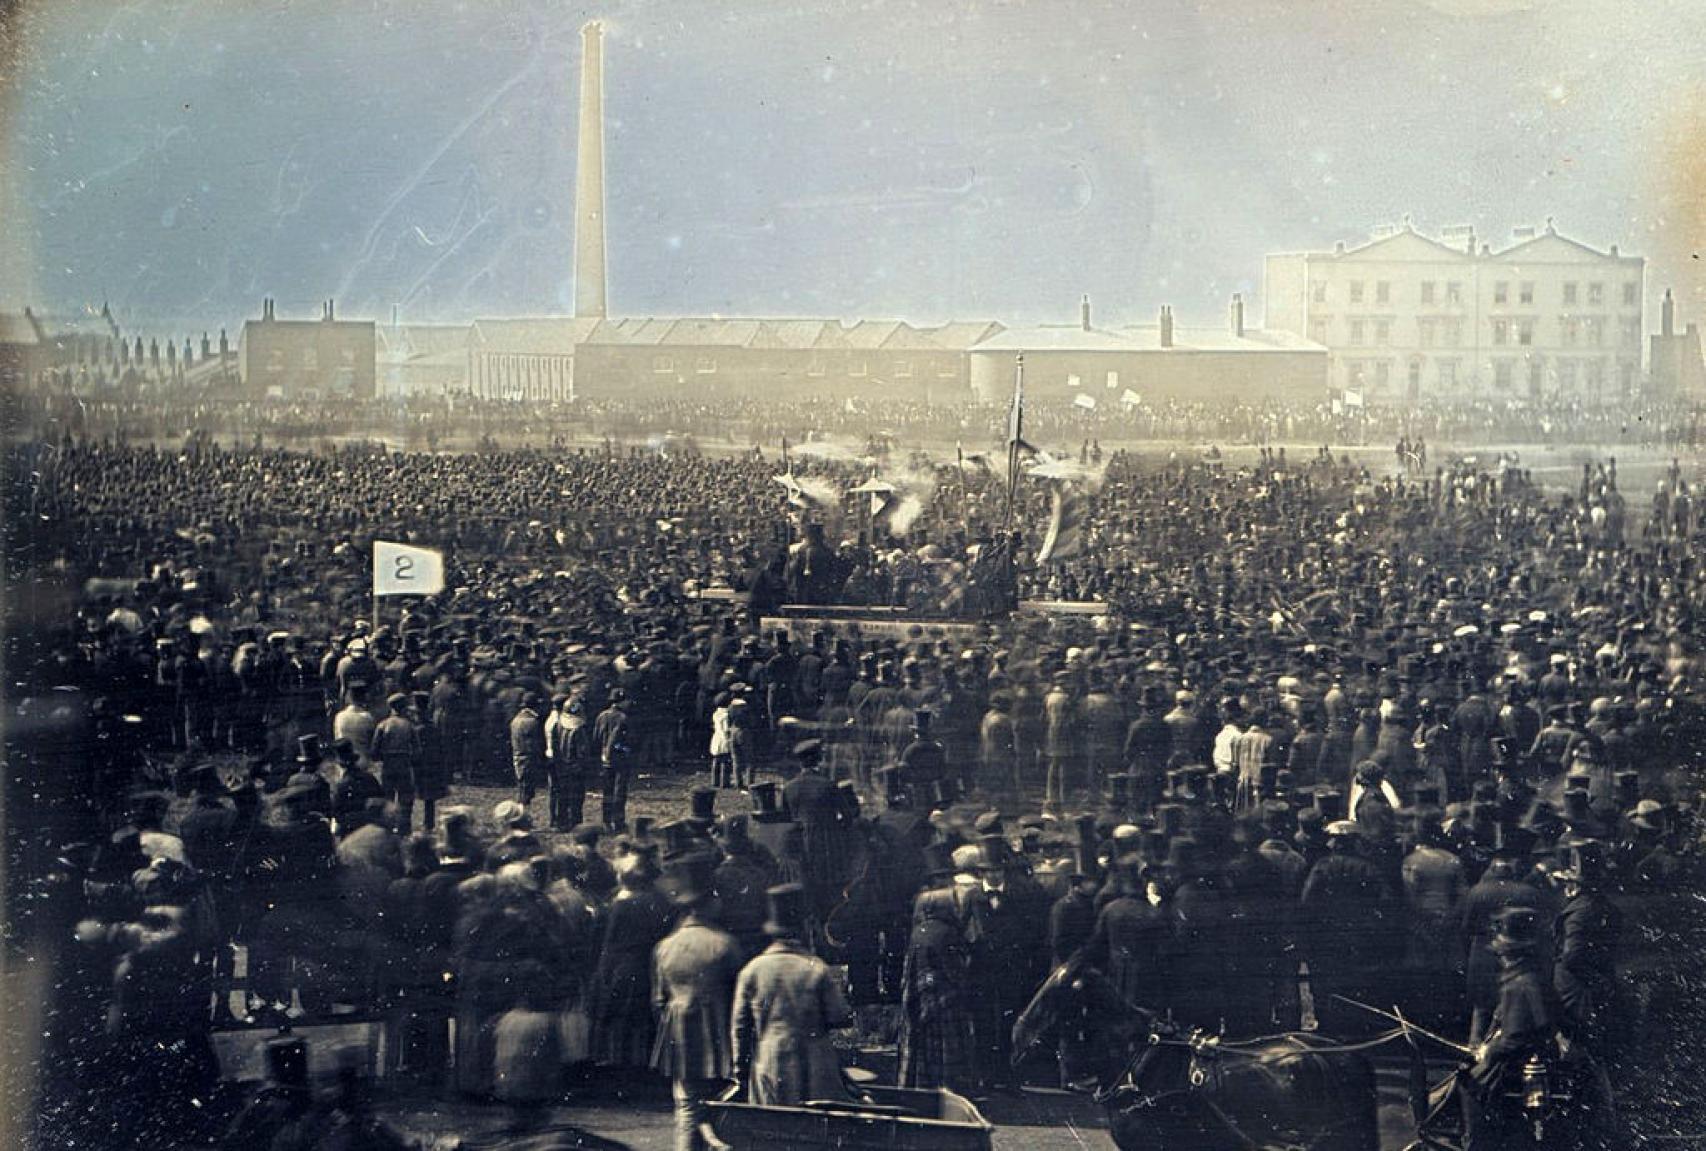 Fotografía coloreada de la manifestación cartista del 10 de abril de 1848 en Kennington Common, Londres.